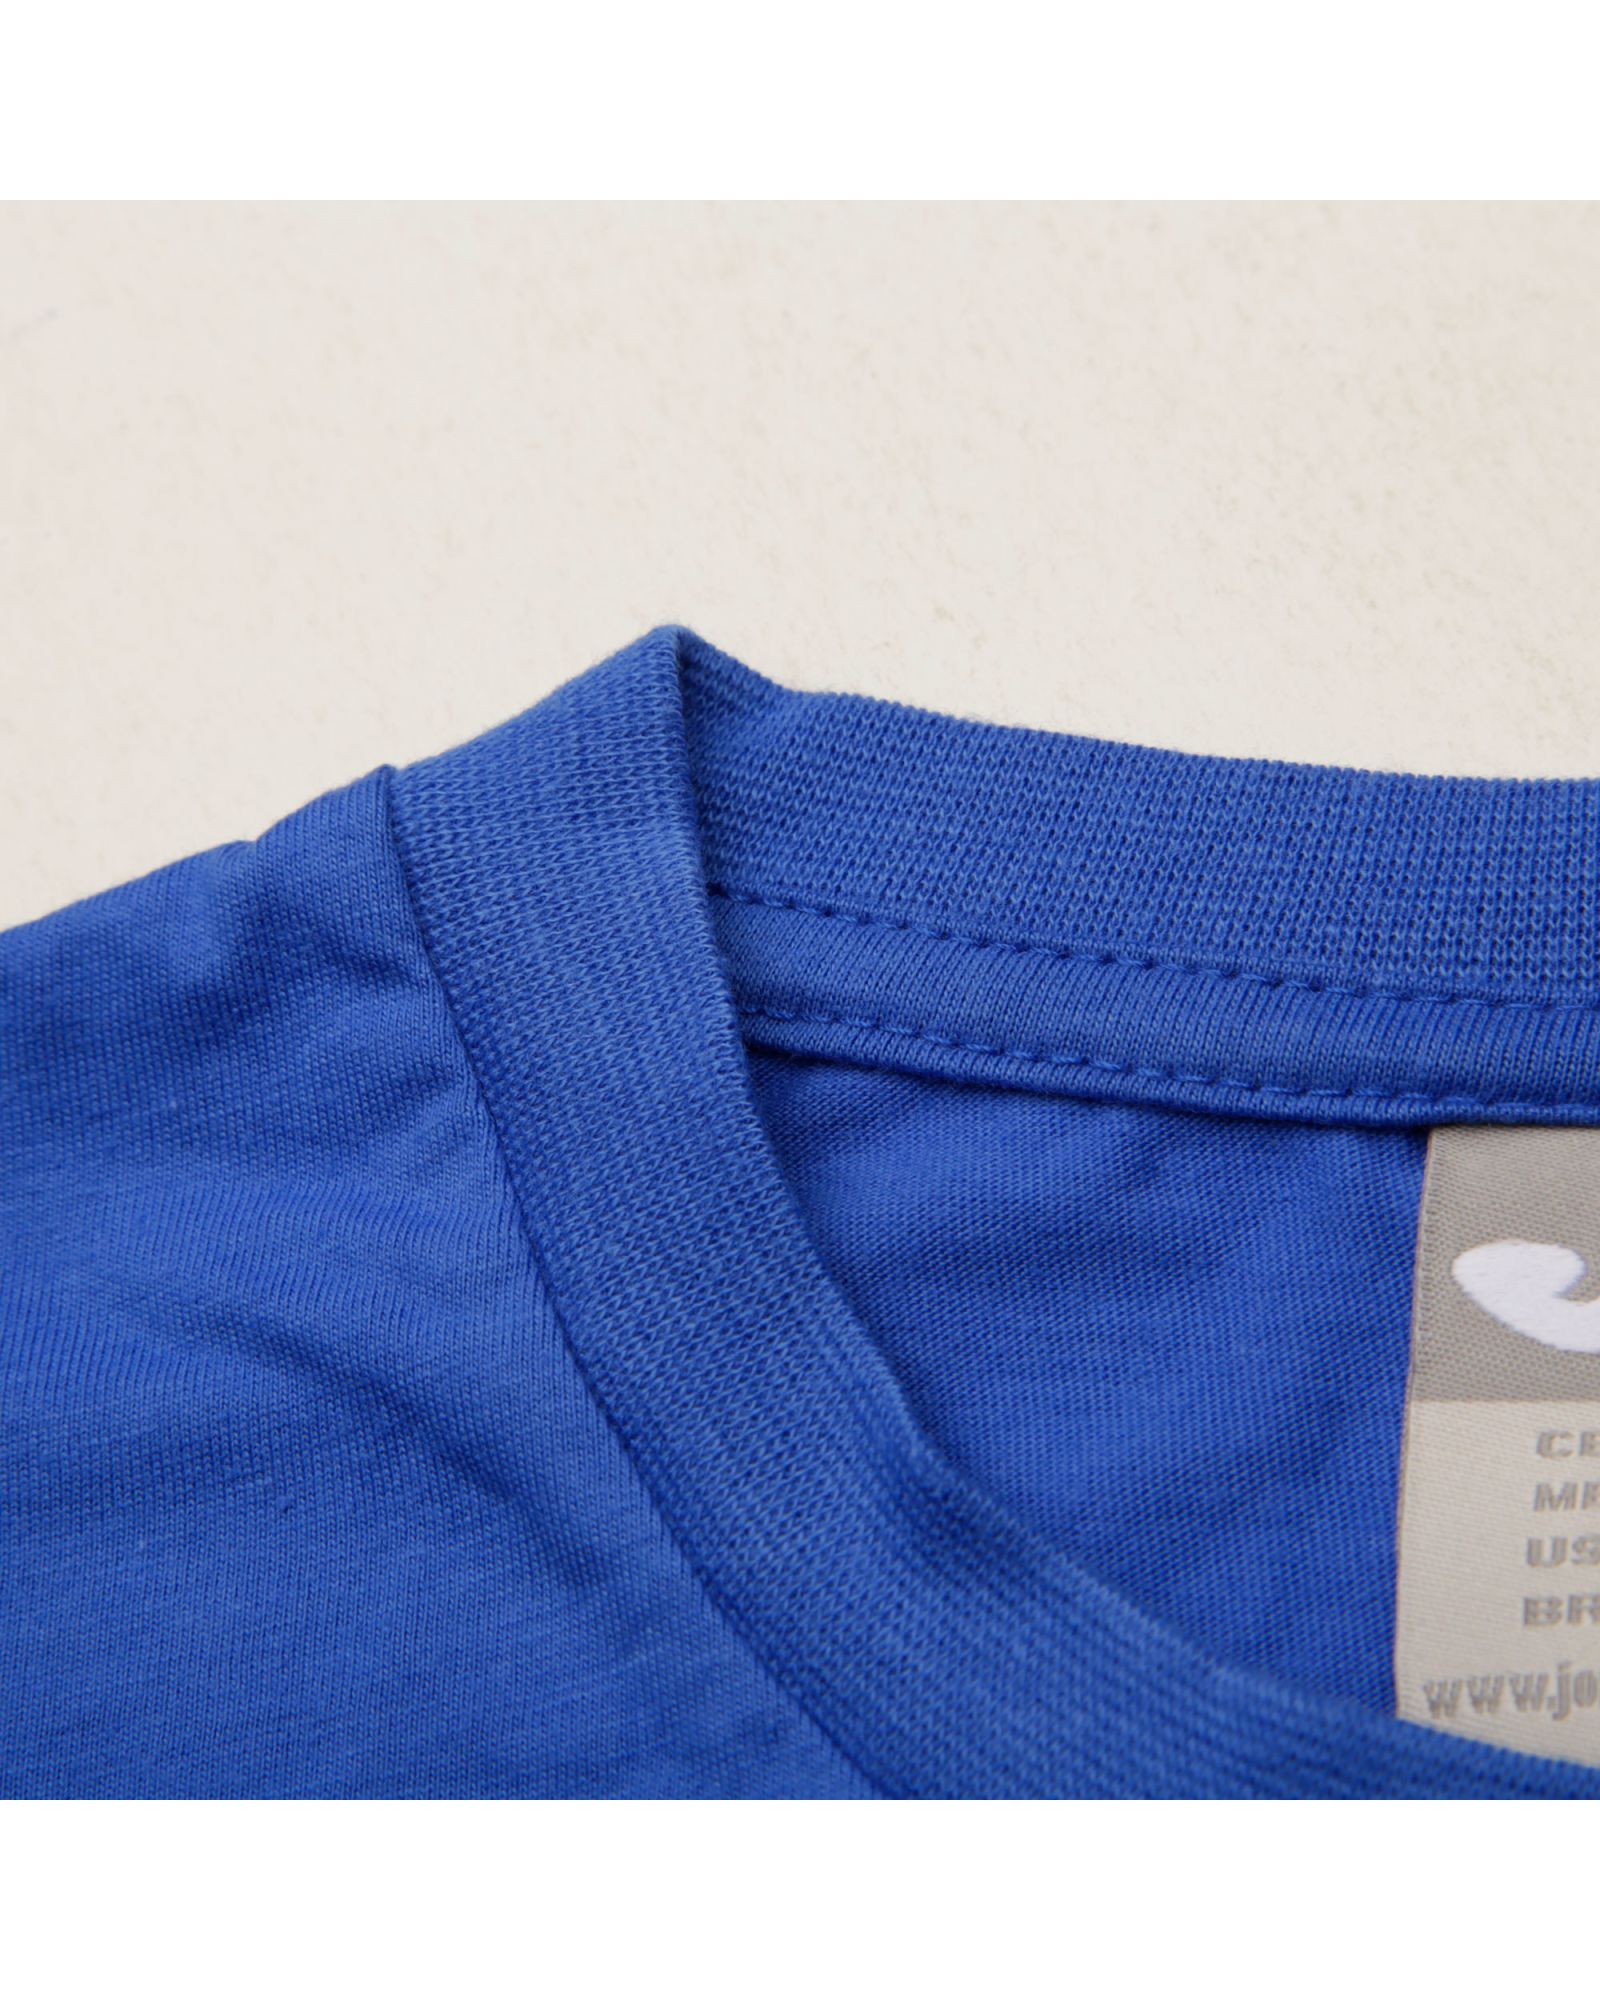 Camiseta de Paseo Cotton Junior Azul - Fútbol Factory